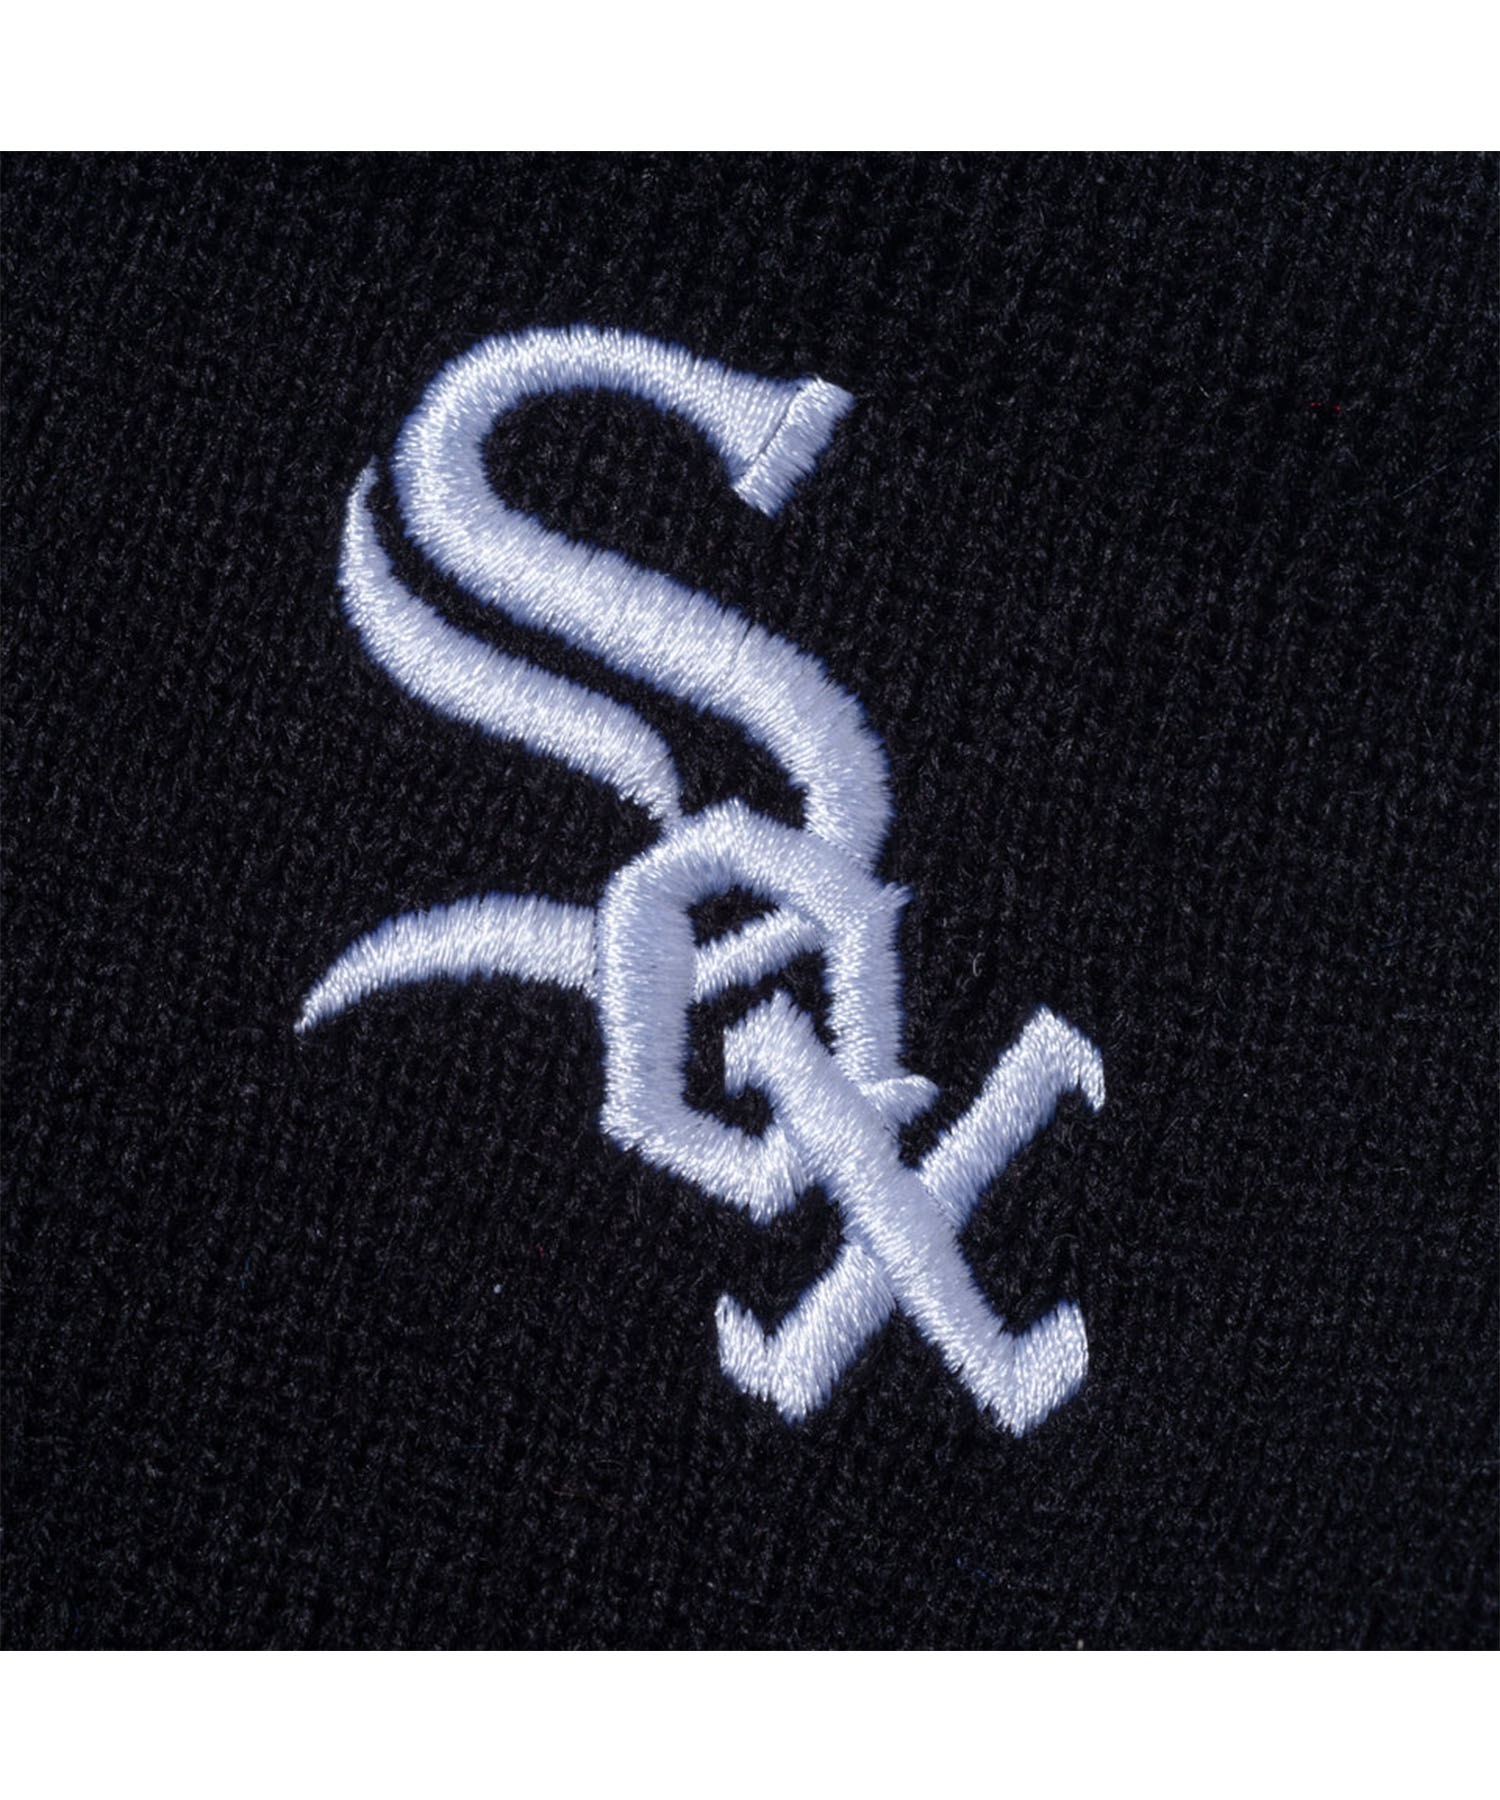 NEW ERA/ニューエラ ビーニー ニット帽 ダブル 13751373 MLB ALLOVER シカゴ・ホワイトソックス(BLK-FREE)